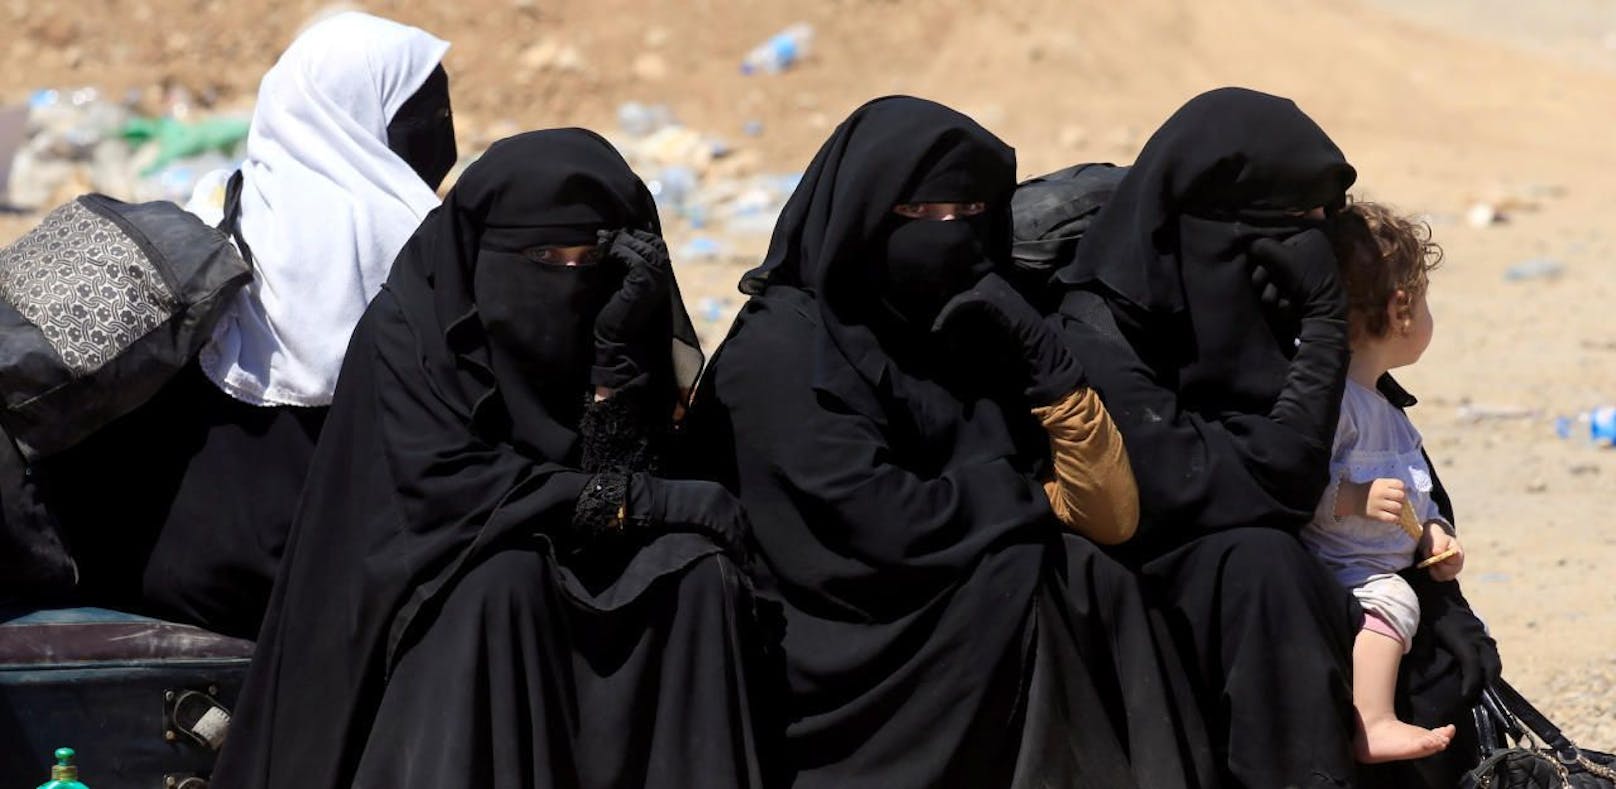 Irakische Frauen, die vor den blutigen Kämpfen aus der IS-Hochburg Mossul geflohen sind.